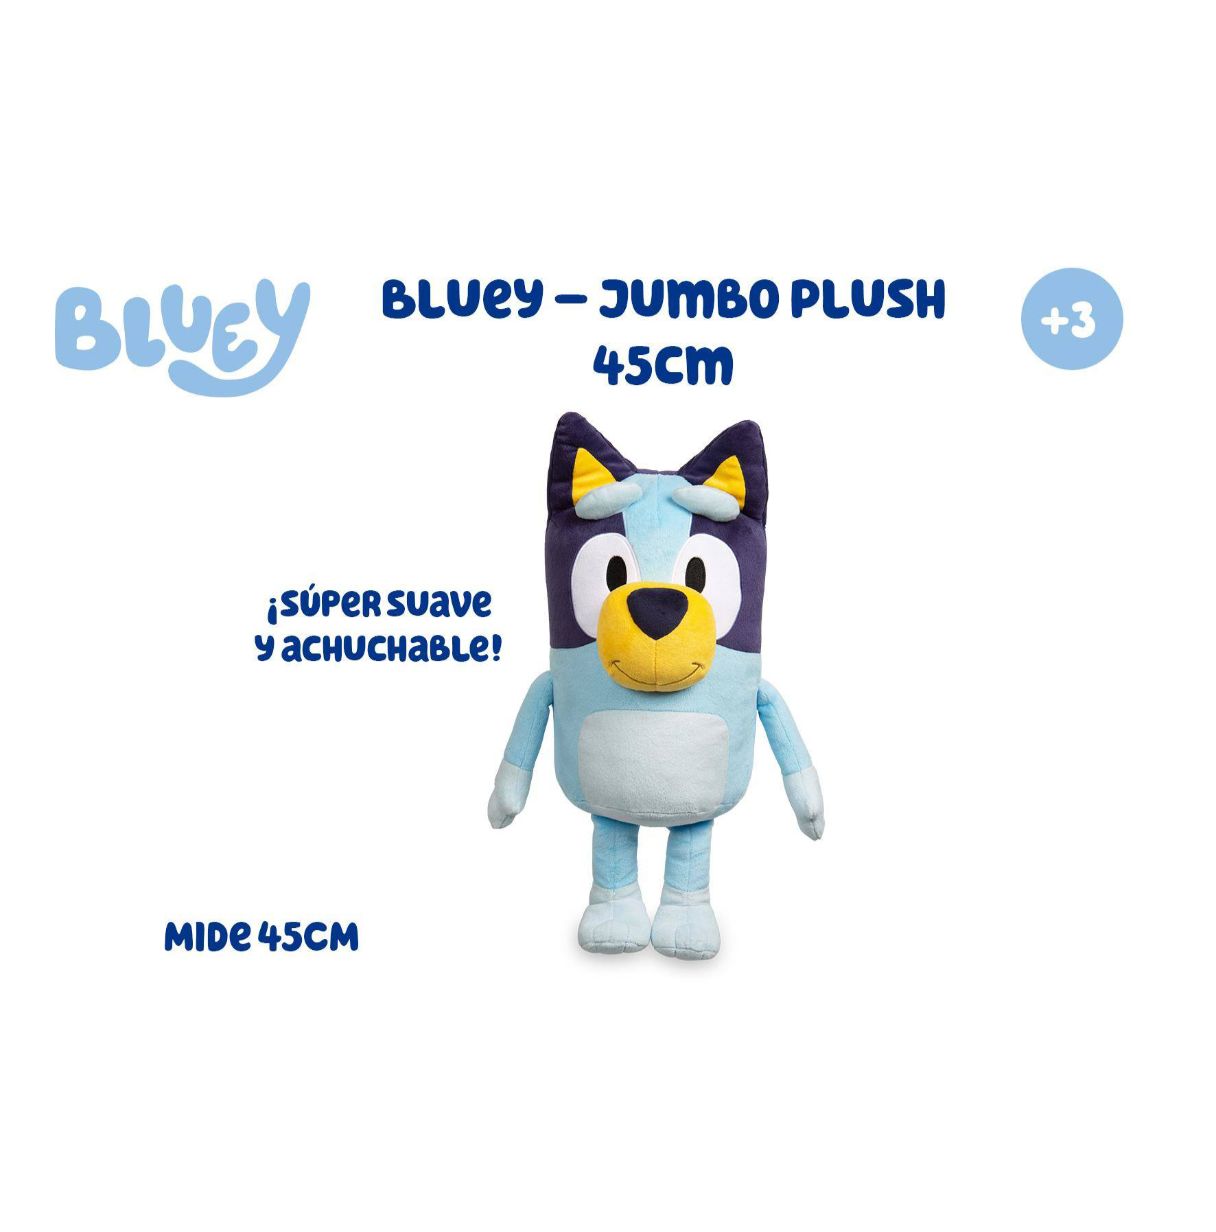 bluey – jumbo plush de 40 centímetros, peluche del perrito bluey de color azul, como en la serie infantil, suave y blandito, par